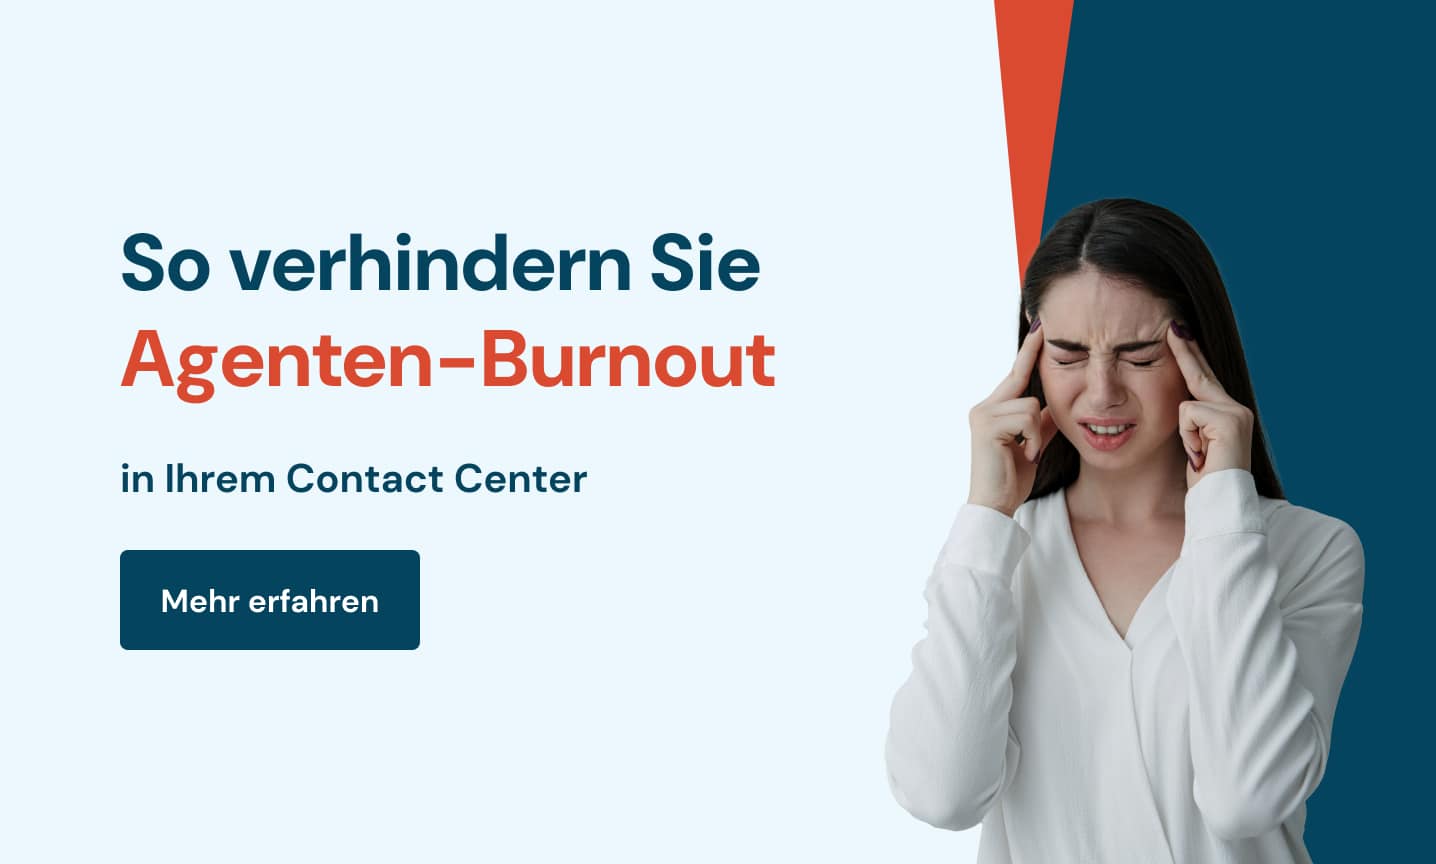 So verhindern Sie Agenten-Burnout in Ihrem Contact Center